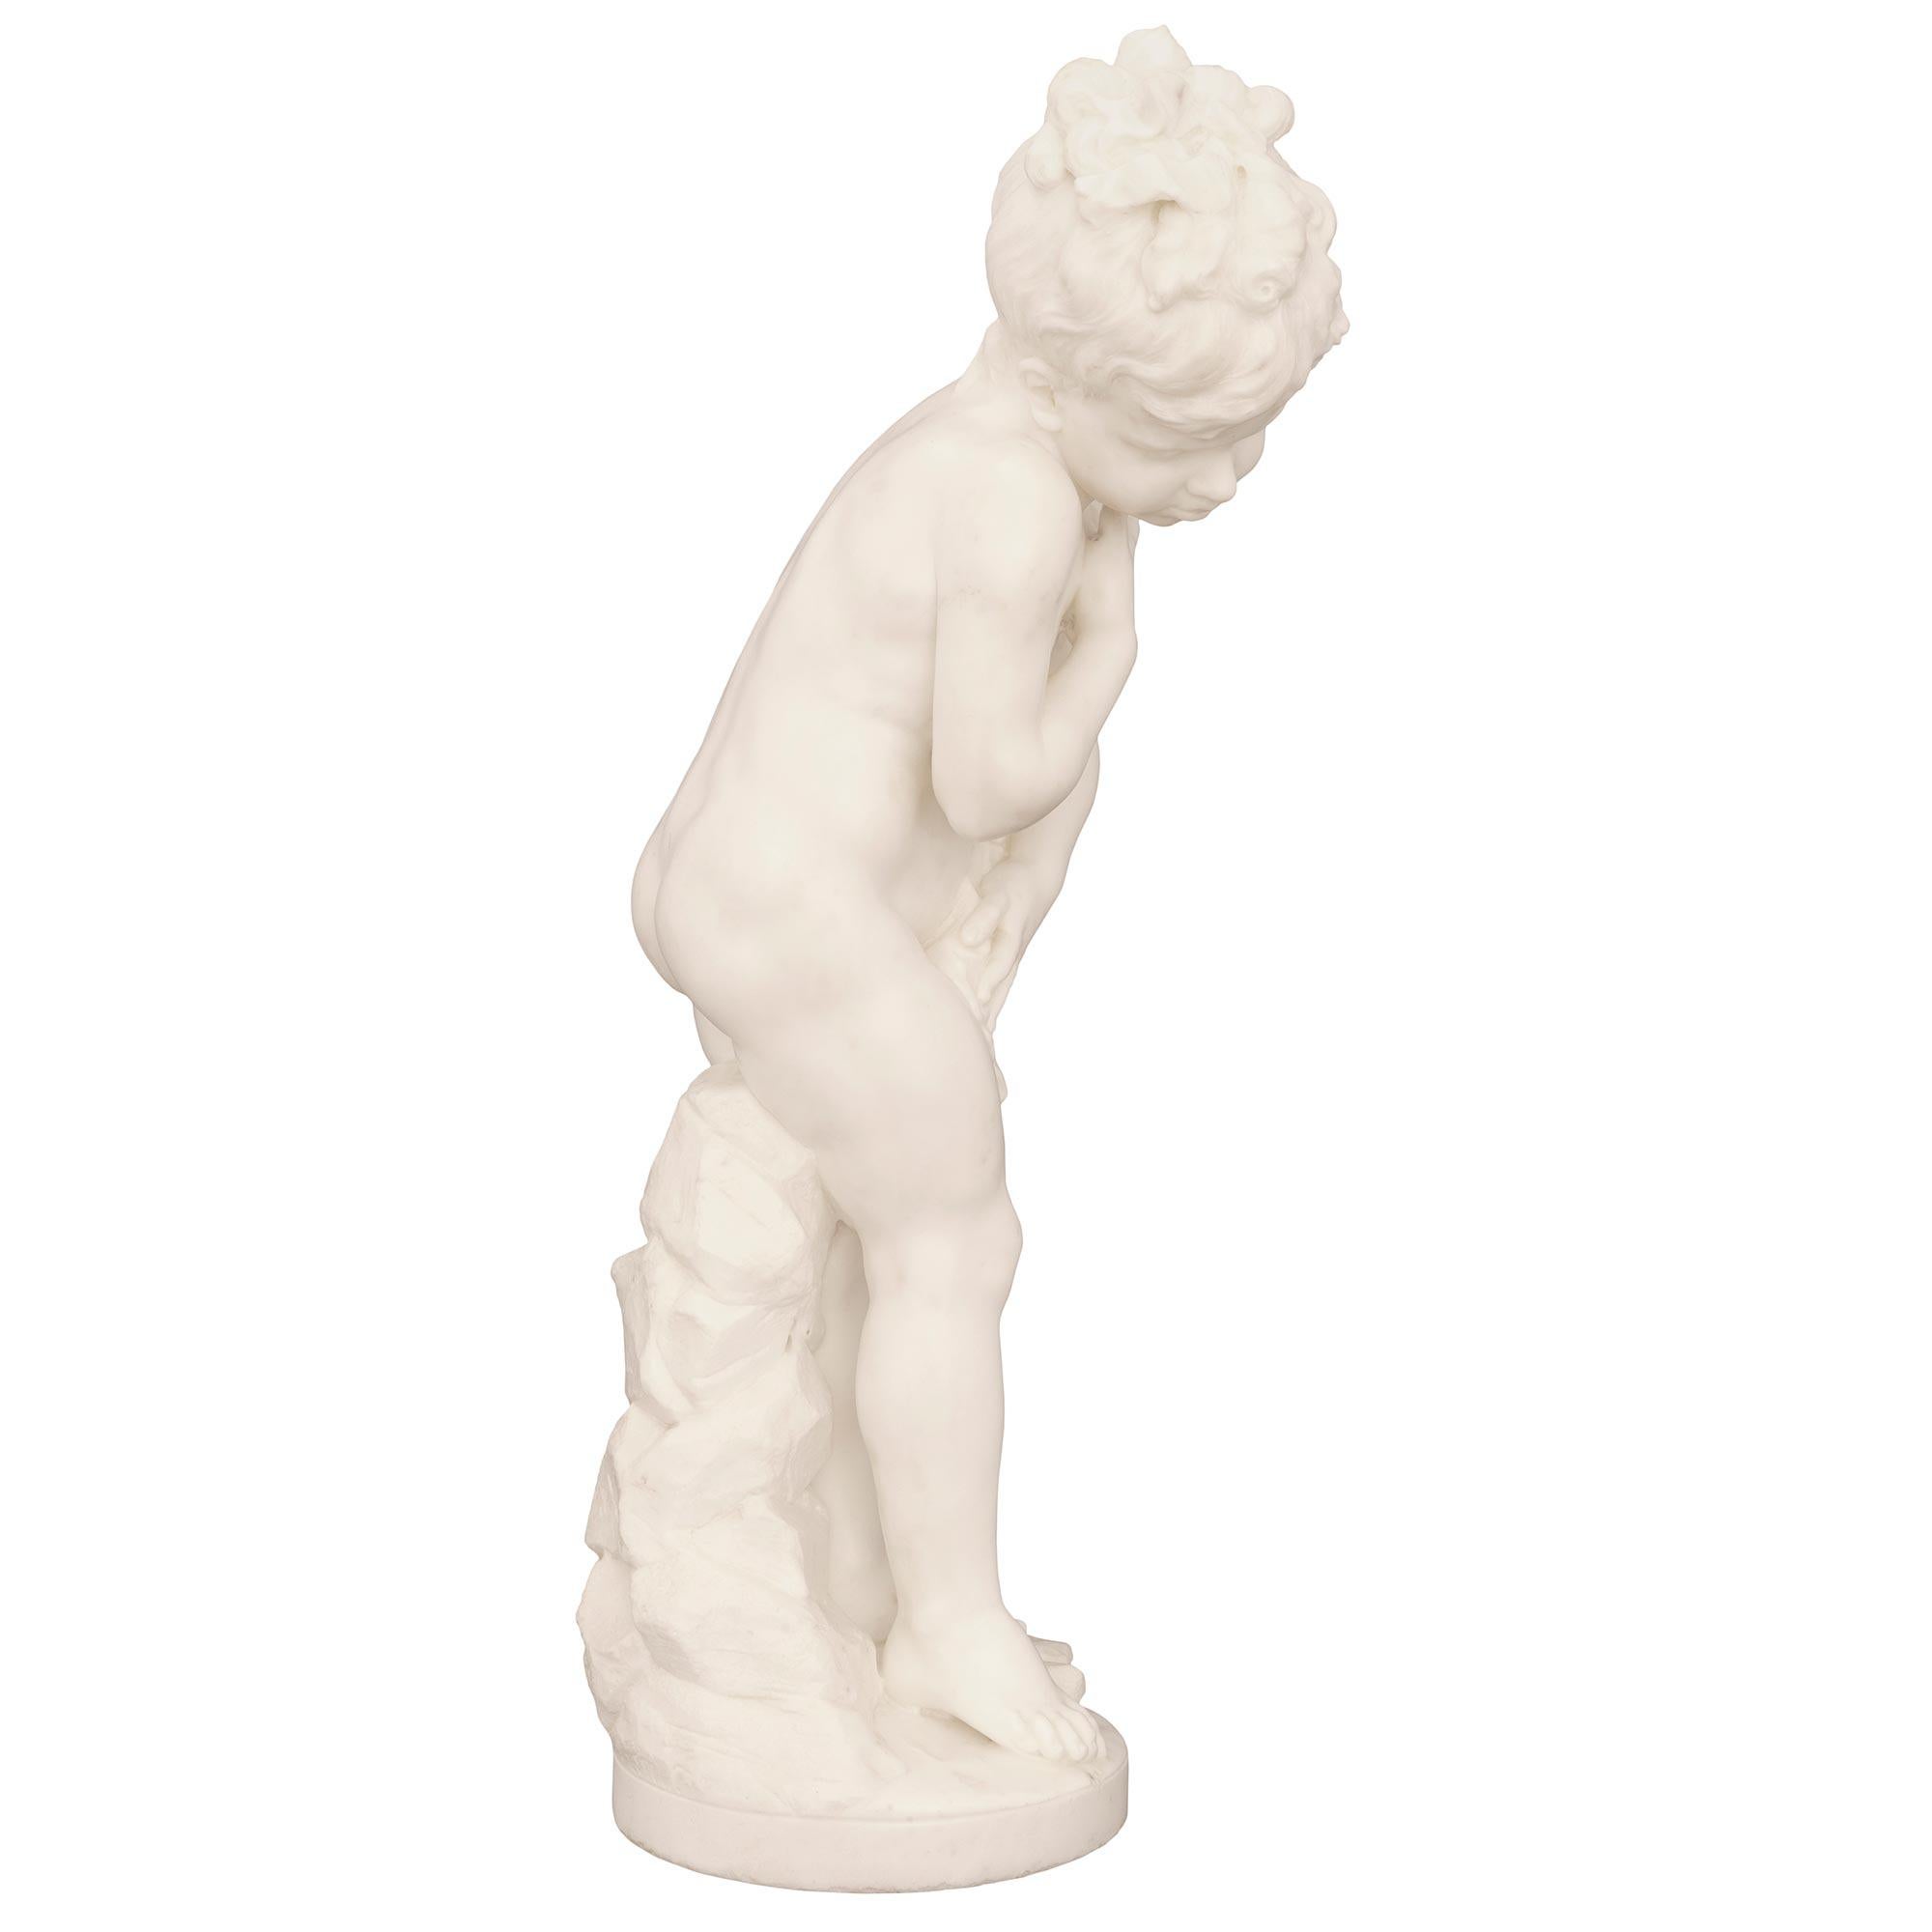 Italian 19th Century White Carrara Marble Statue Signed F. Mariotti Scul For Sale 1